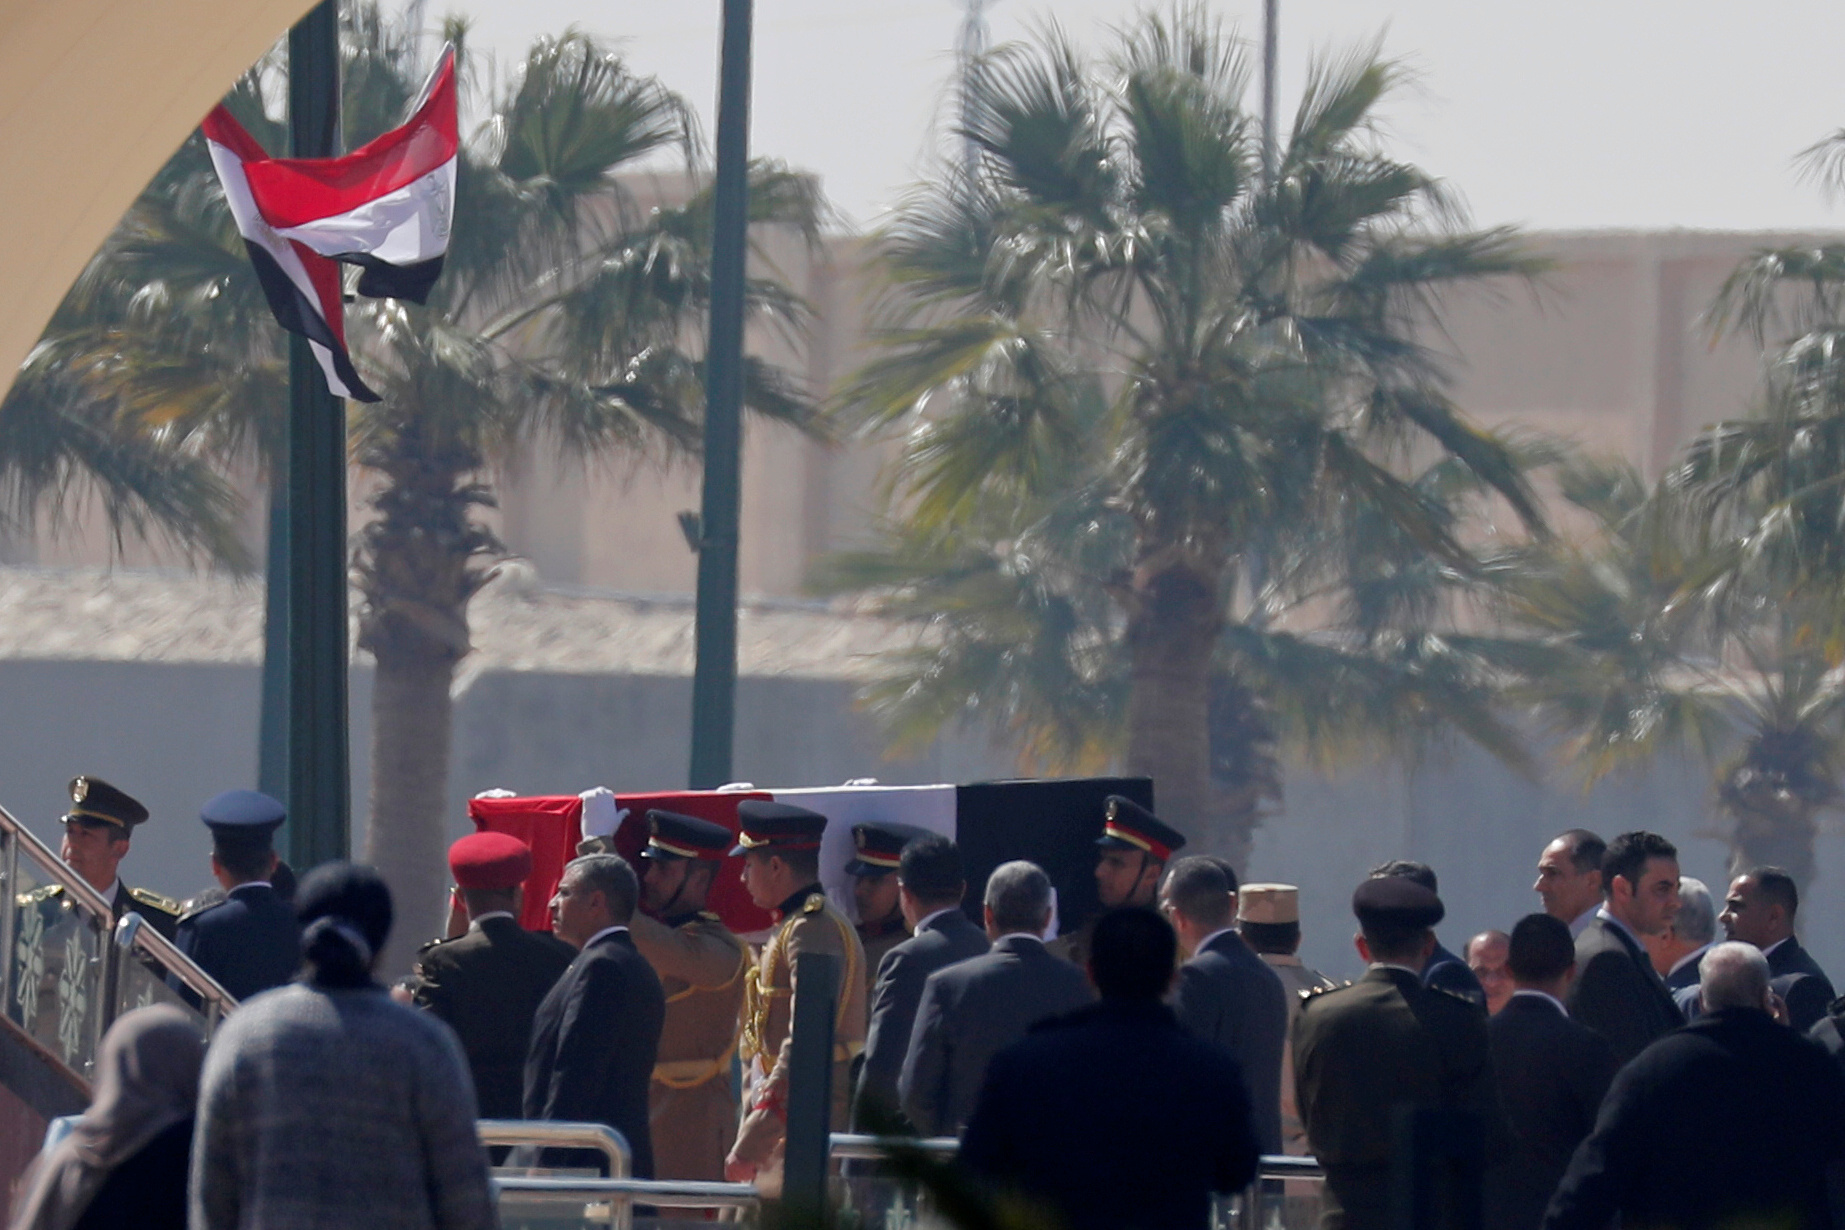 صور جثمان وقبر الرئيس الأسبق حسنى مبارك 2020